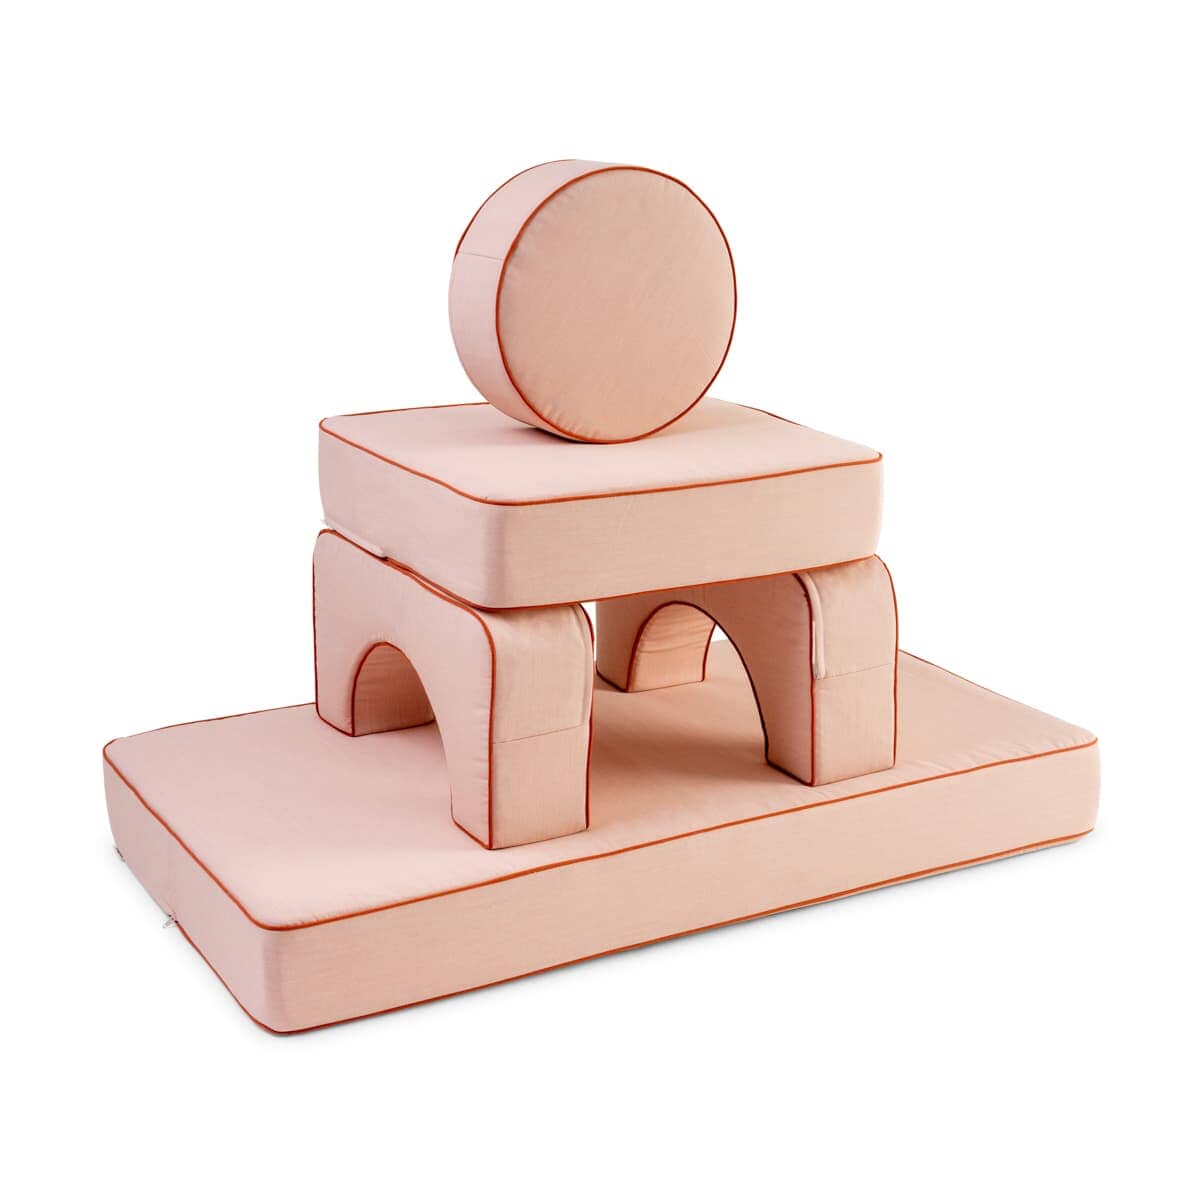 Studio image of riviera pink modular pillow stack